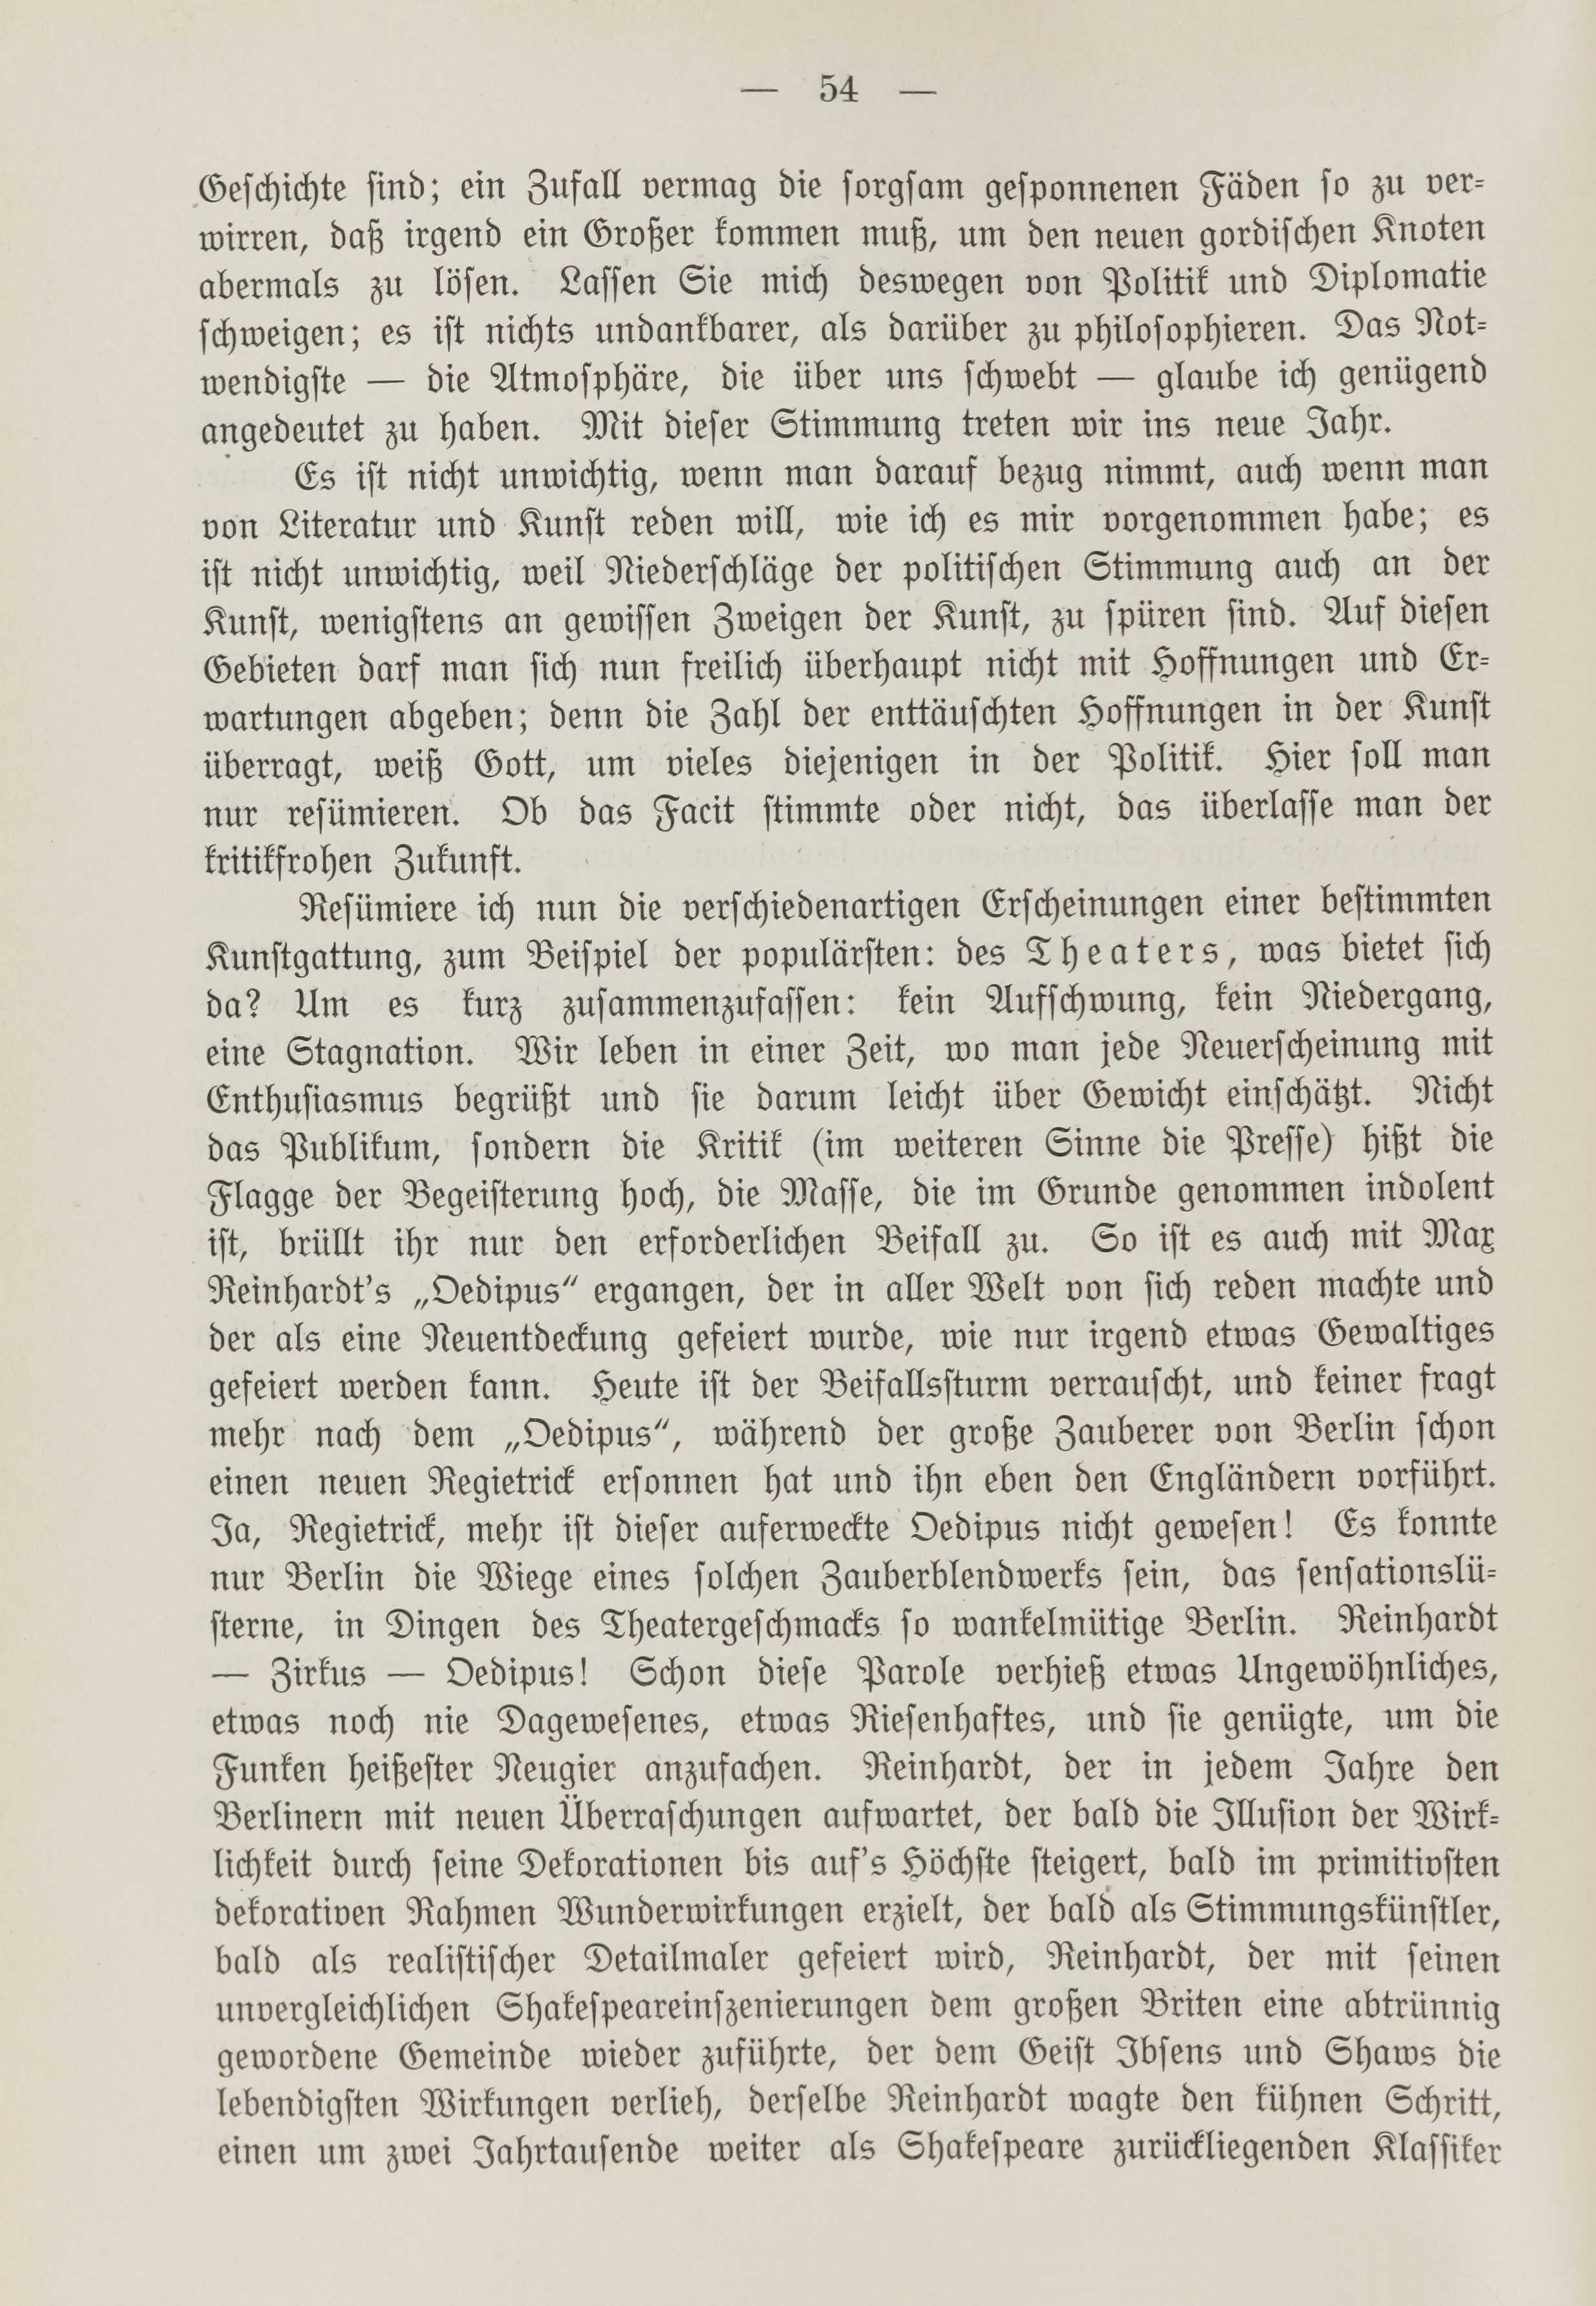 Deutsche Monatsschrift für Russland [1] (1912) | 61. (54) Main body of text